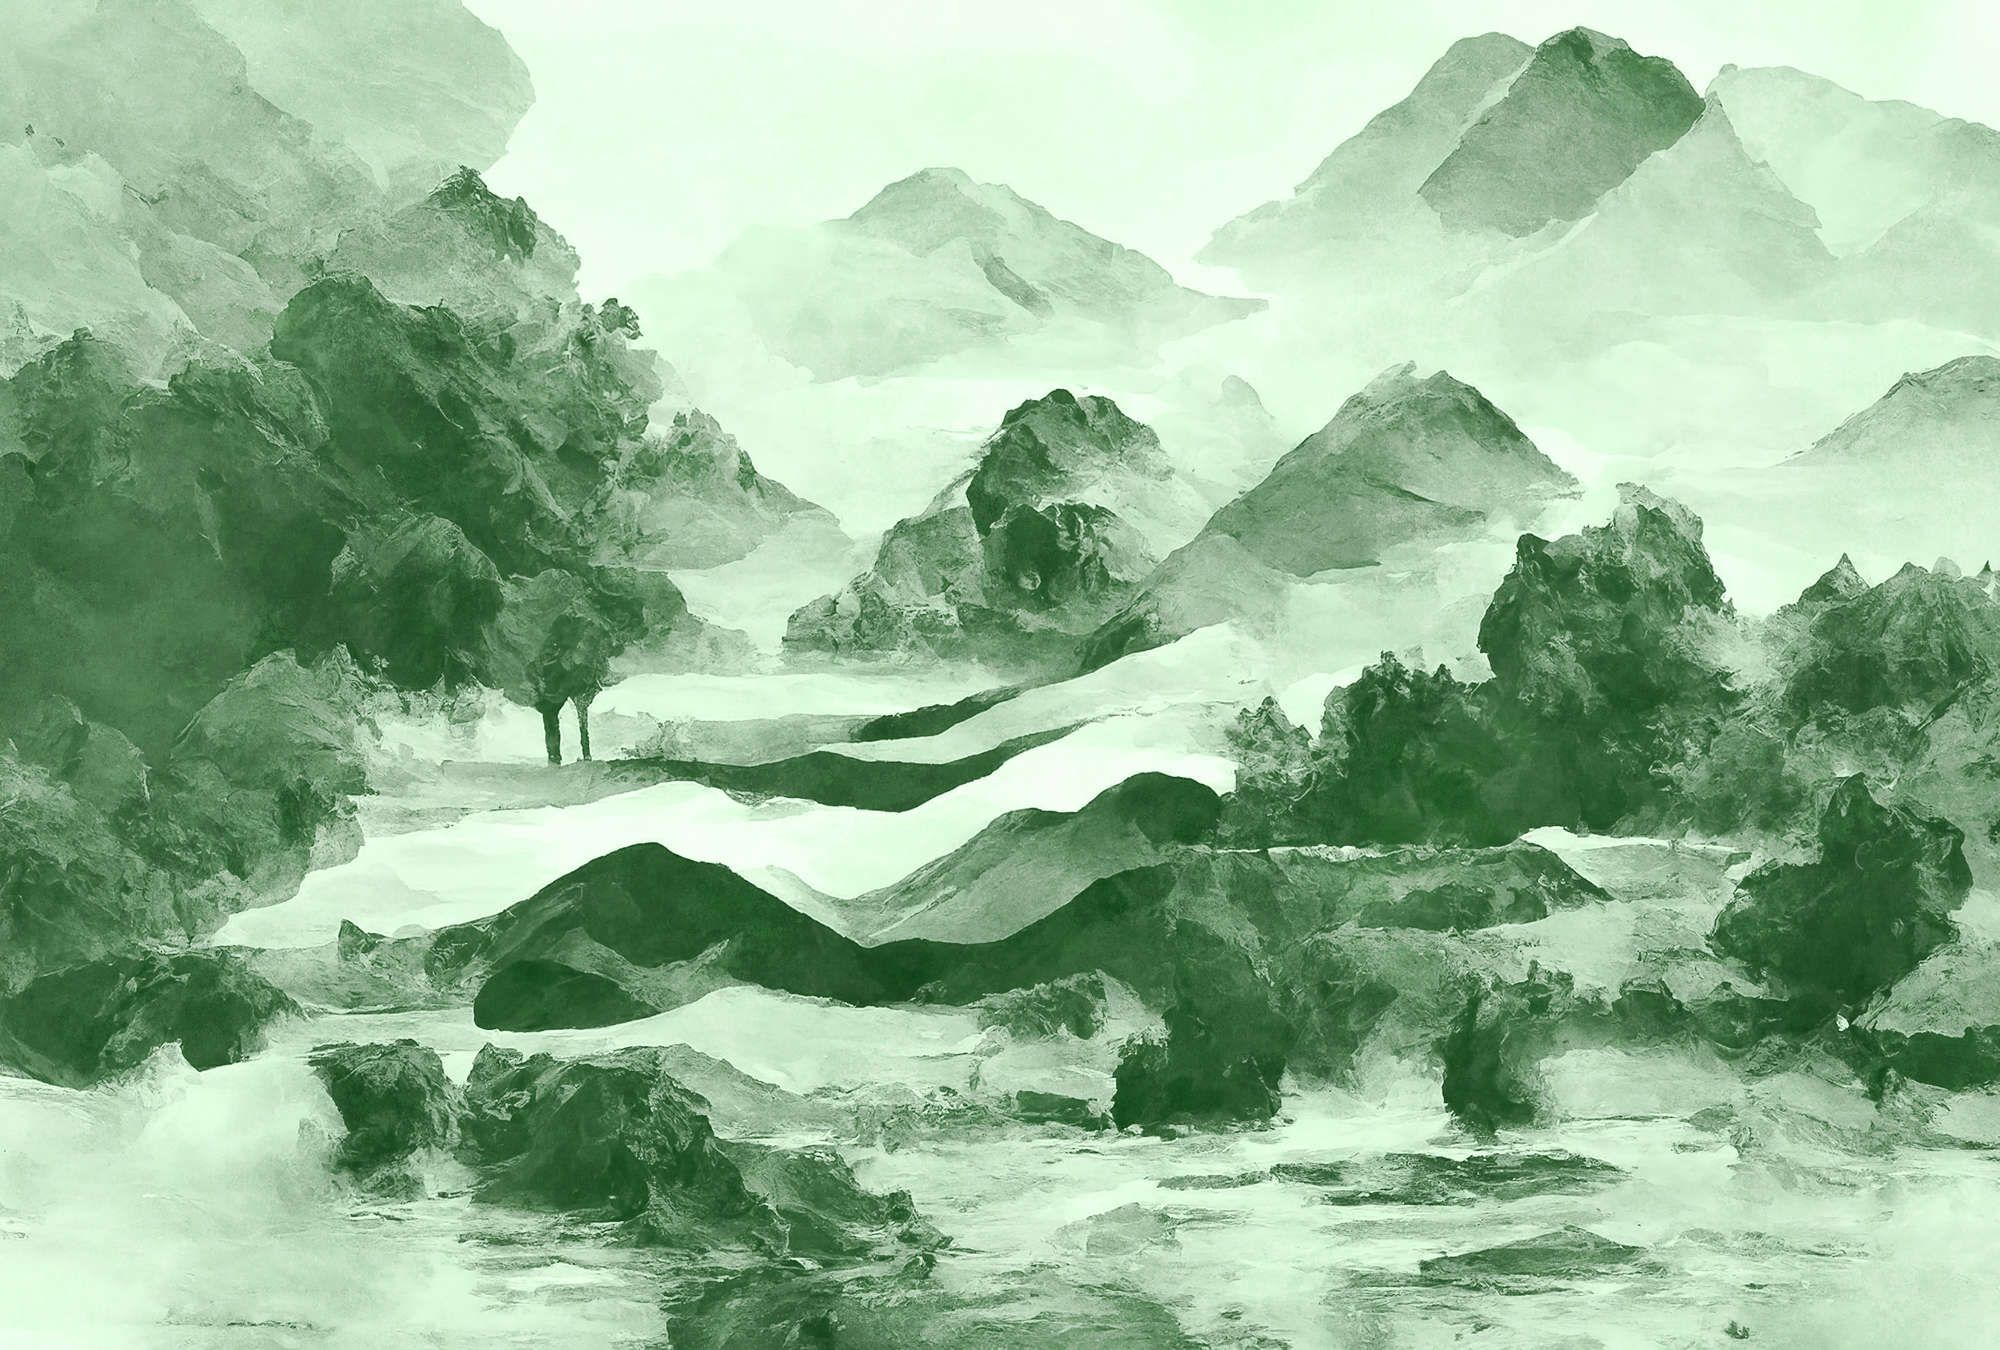             Fotomural »tinterra 2« - Paisaje con montañas y niebla - Verde | Mate, Tela no tejida lisa
        